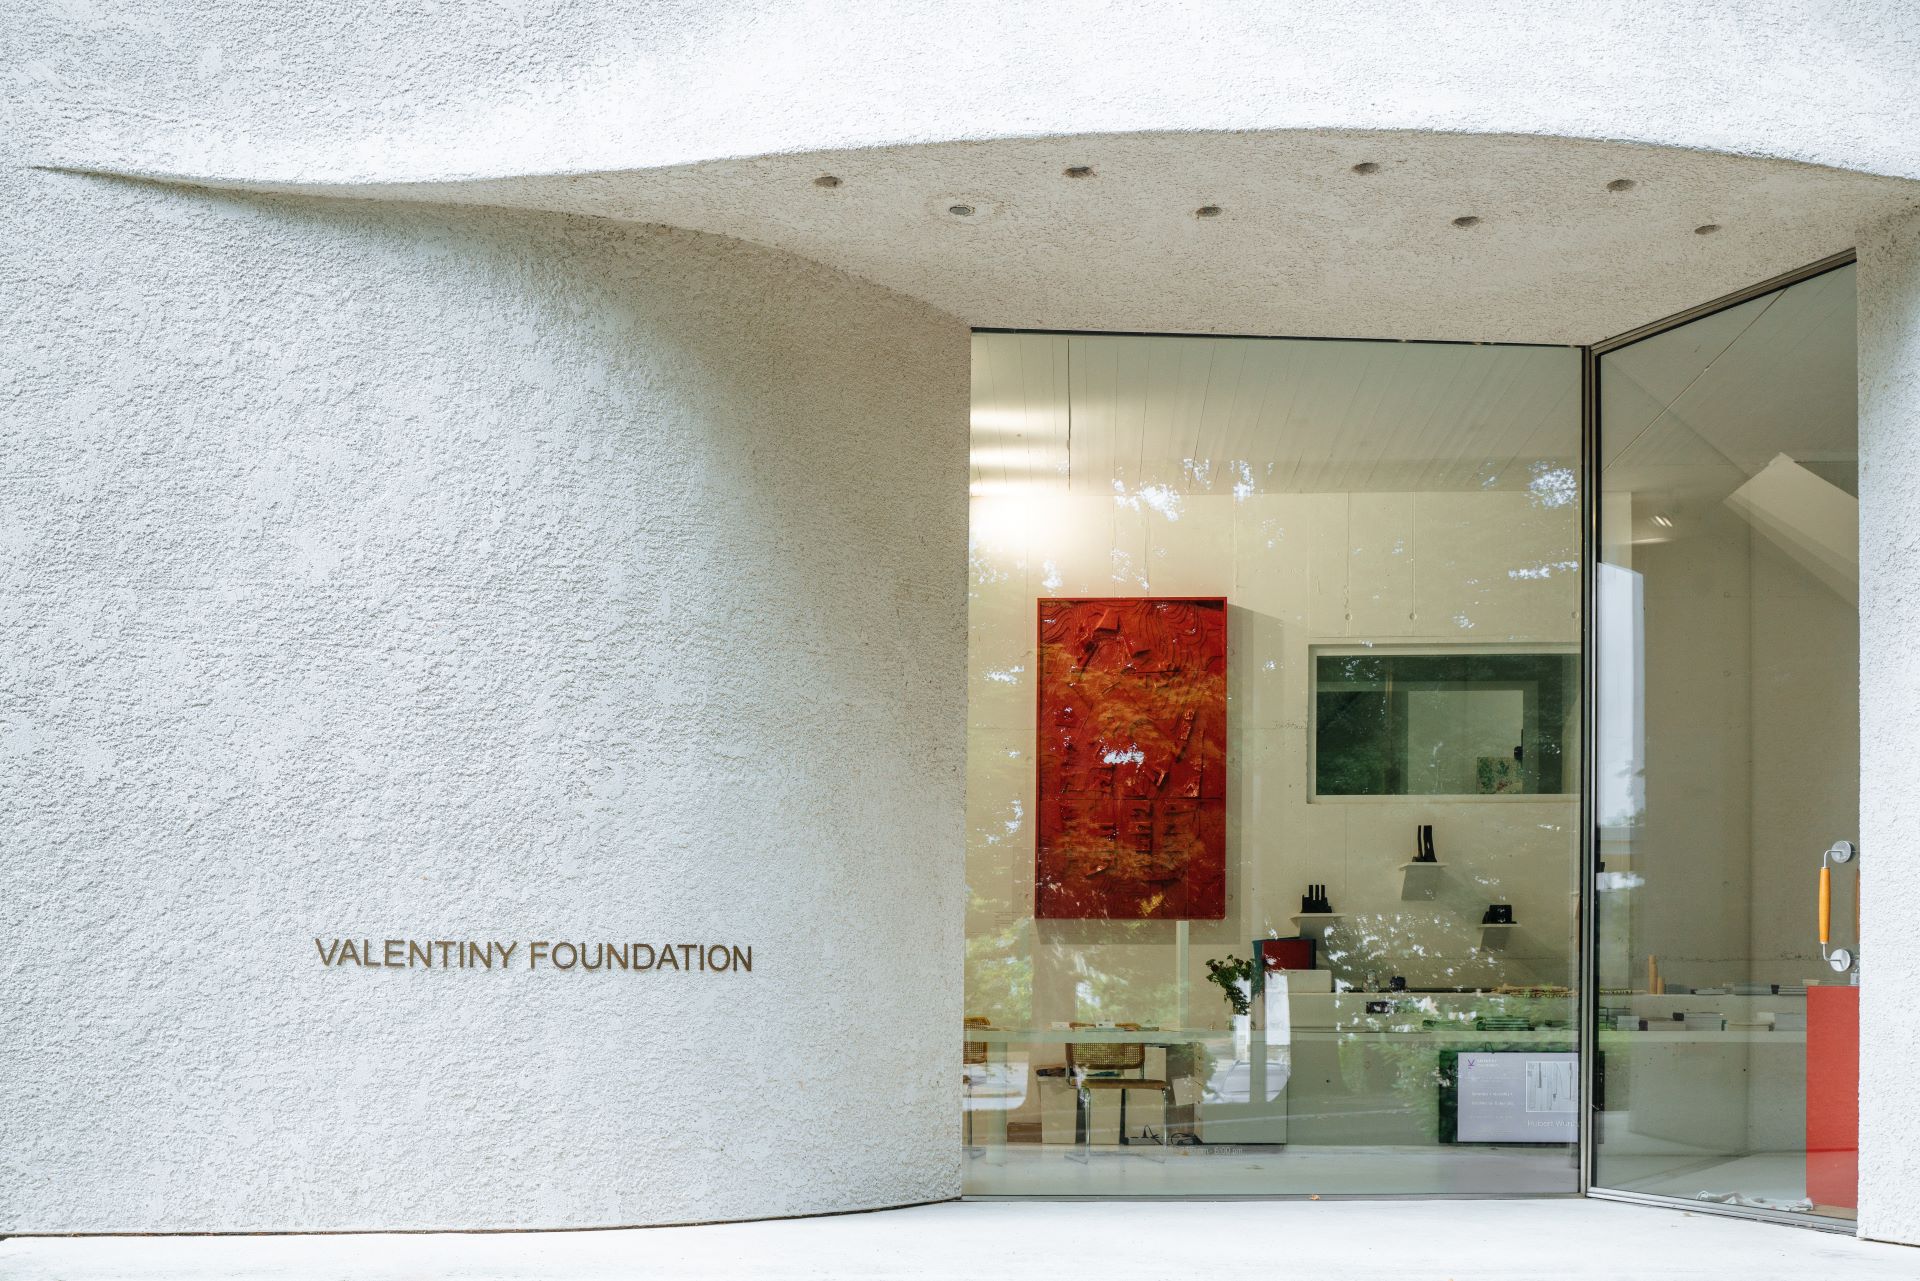 Le bâtiment de la Valentiny Foundation est photographié depuis l'entrée principale. Le bâtiment est blanc et structuré.